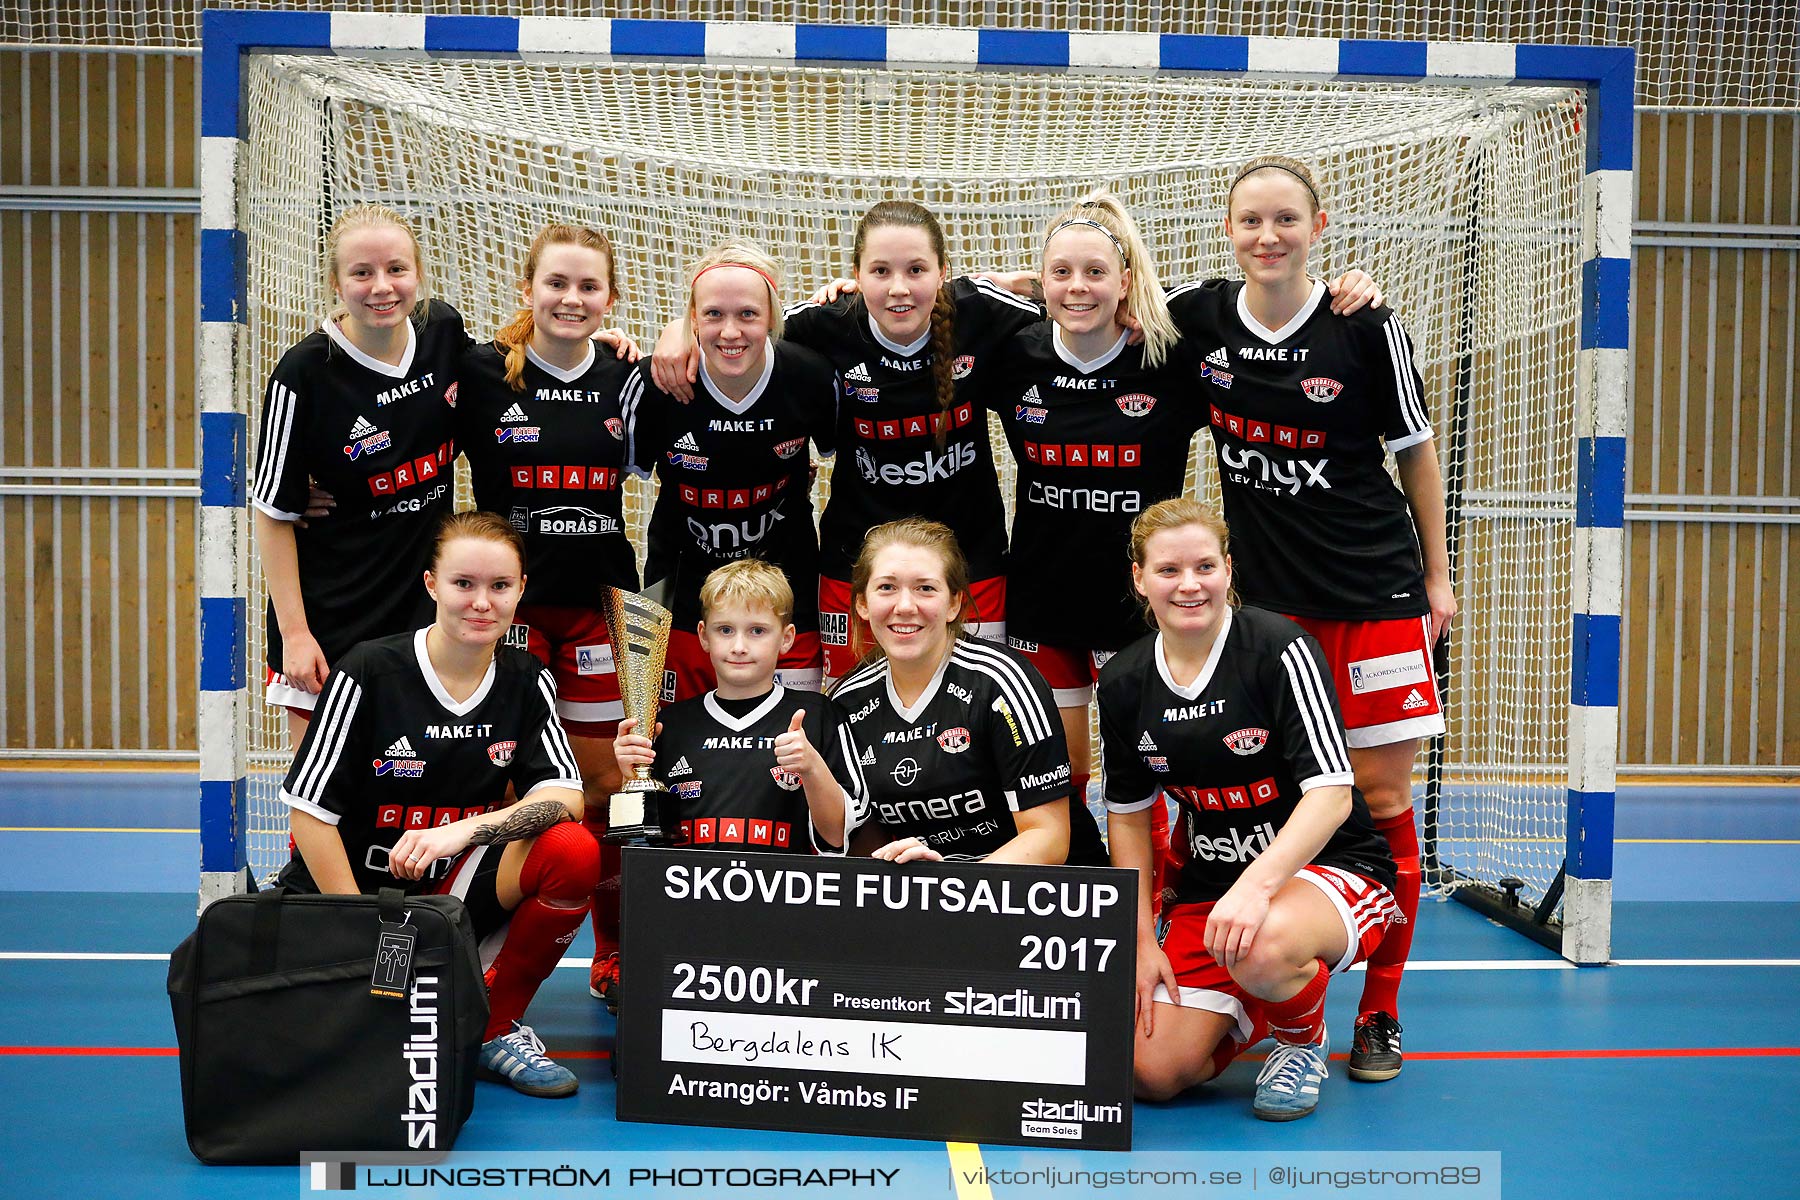 Skövde Futsalcup 2017 Qviding FIF IFK Skövde FK Skövde KIK Falköping FC Våmbs IF,mix,Arena Skövde,Skövde,Sverige,Futsal,,2017,192845